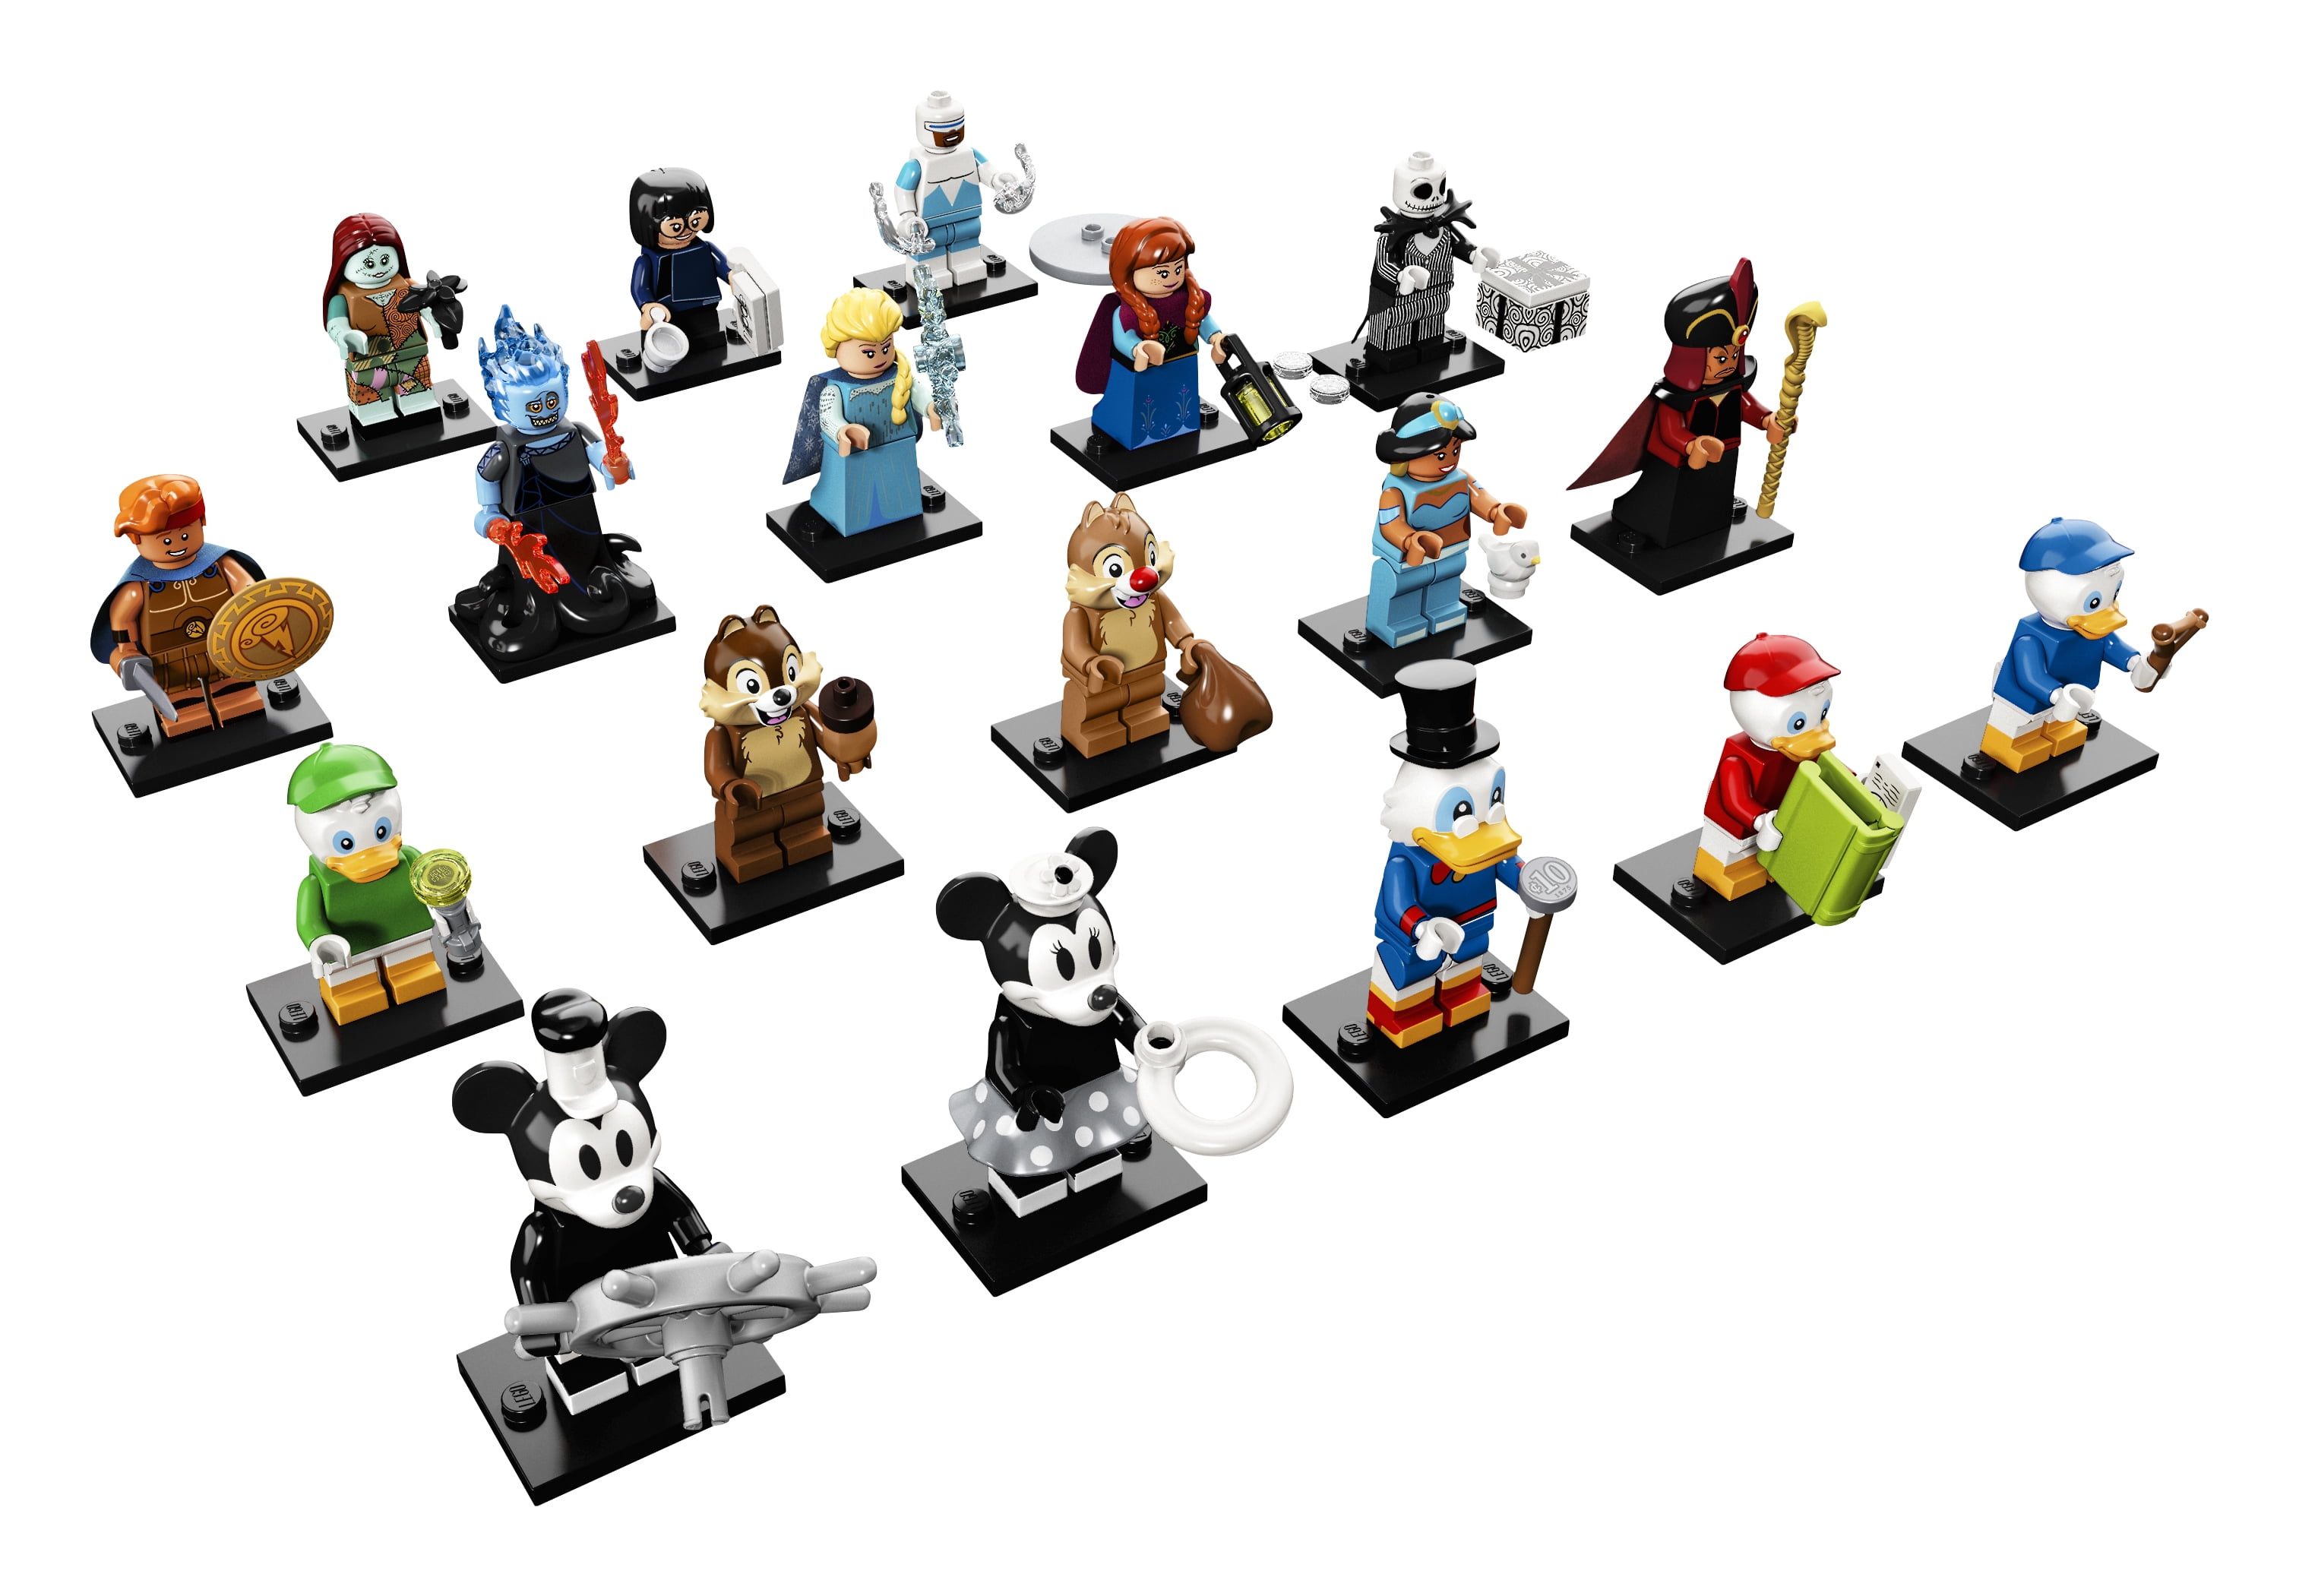 SEALED LEGO 71022 Harry Potter Complete Set of 26 Minifigures 5005254 BRICKTOBER 